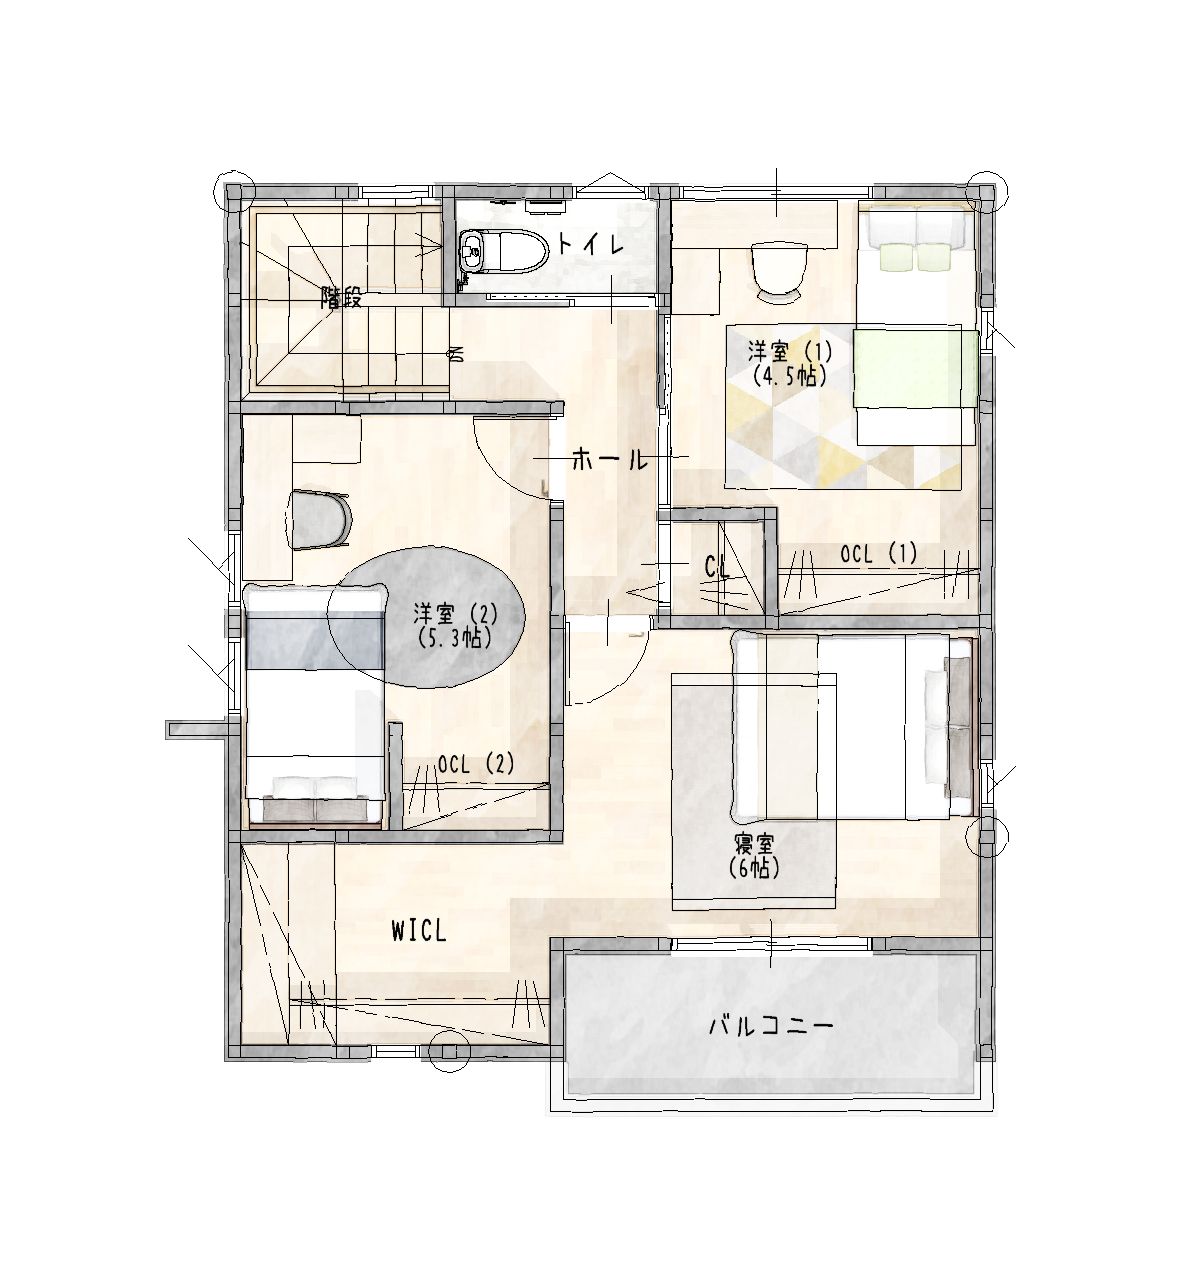 武雄市新築住宅「OURS川良6号地」2階平面図